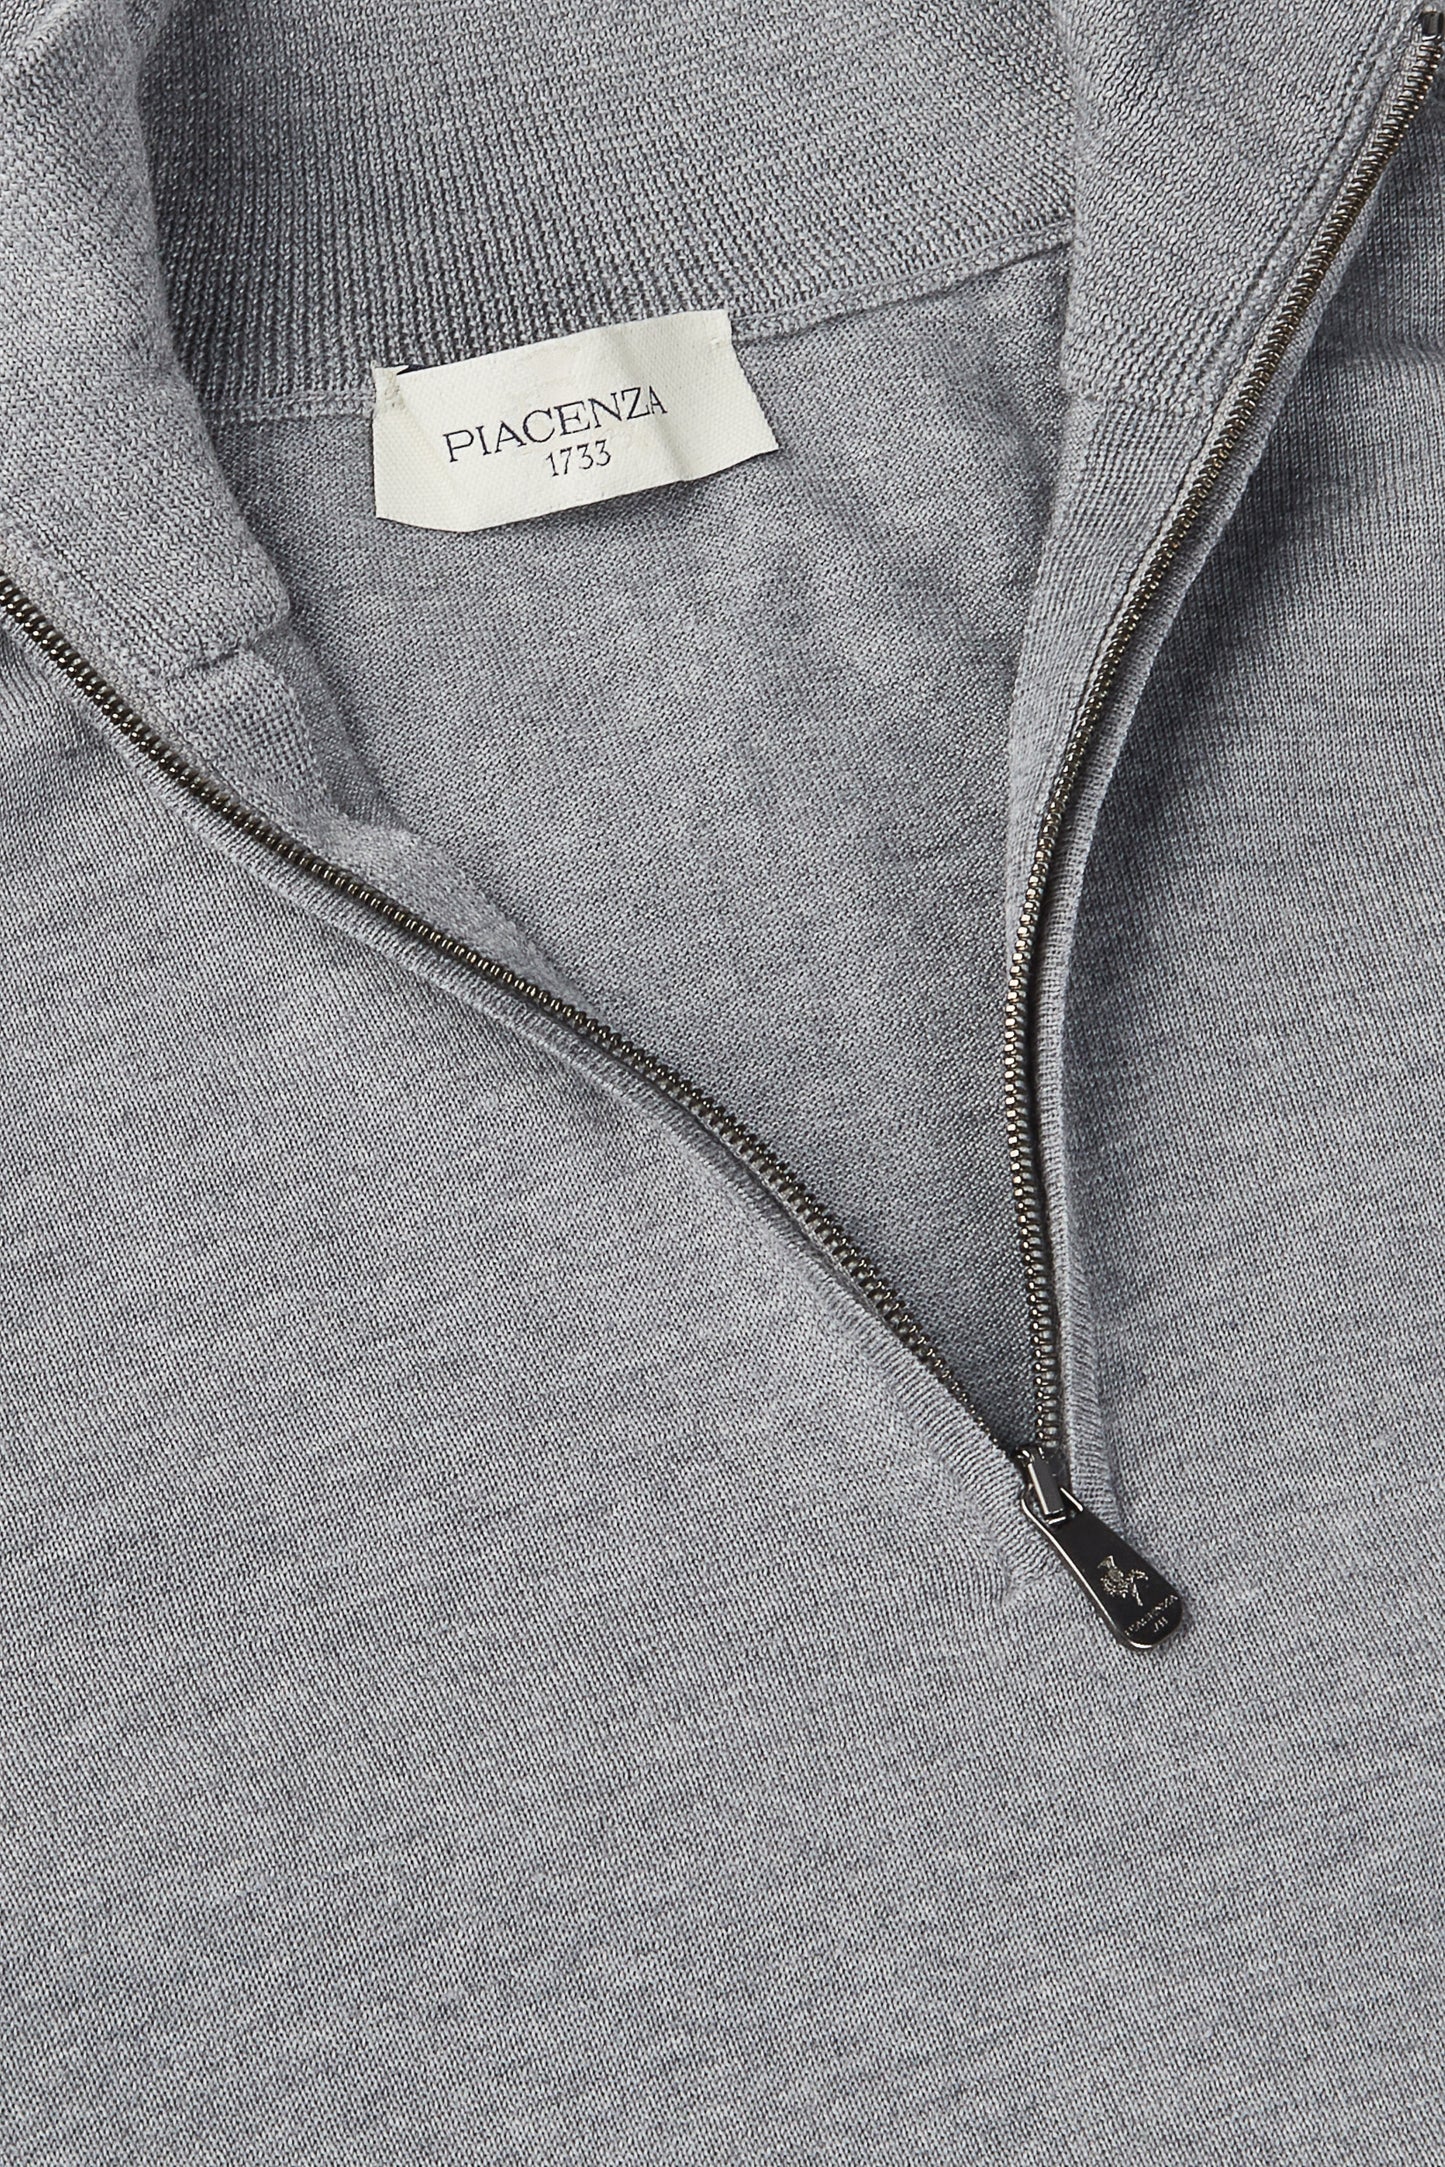 Zip turtleneck in super fine light gray merino wool